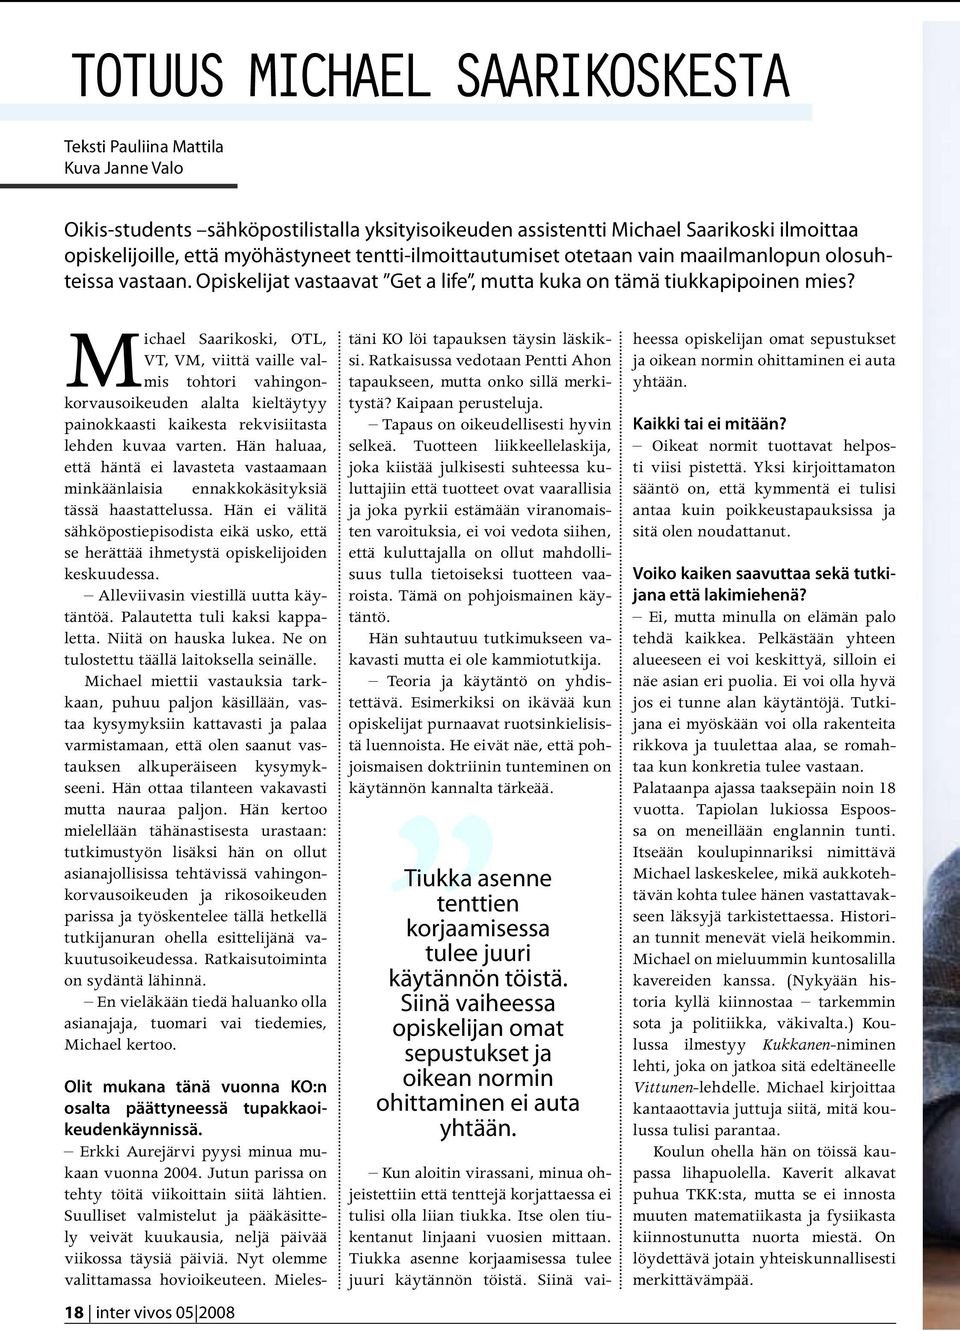 Michael Saarikoski, OTL, VT, VM, viittä vaille valmis tohtori vahingonkorvausoikeuden alalta kieltäytyy painokkaasti kaikesta rekvisiitasta lehden kuvaa varten.